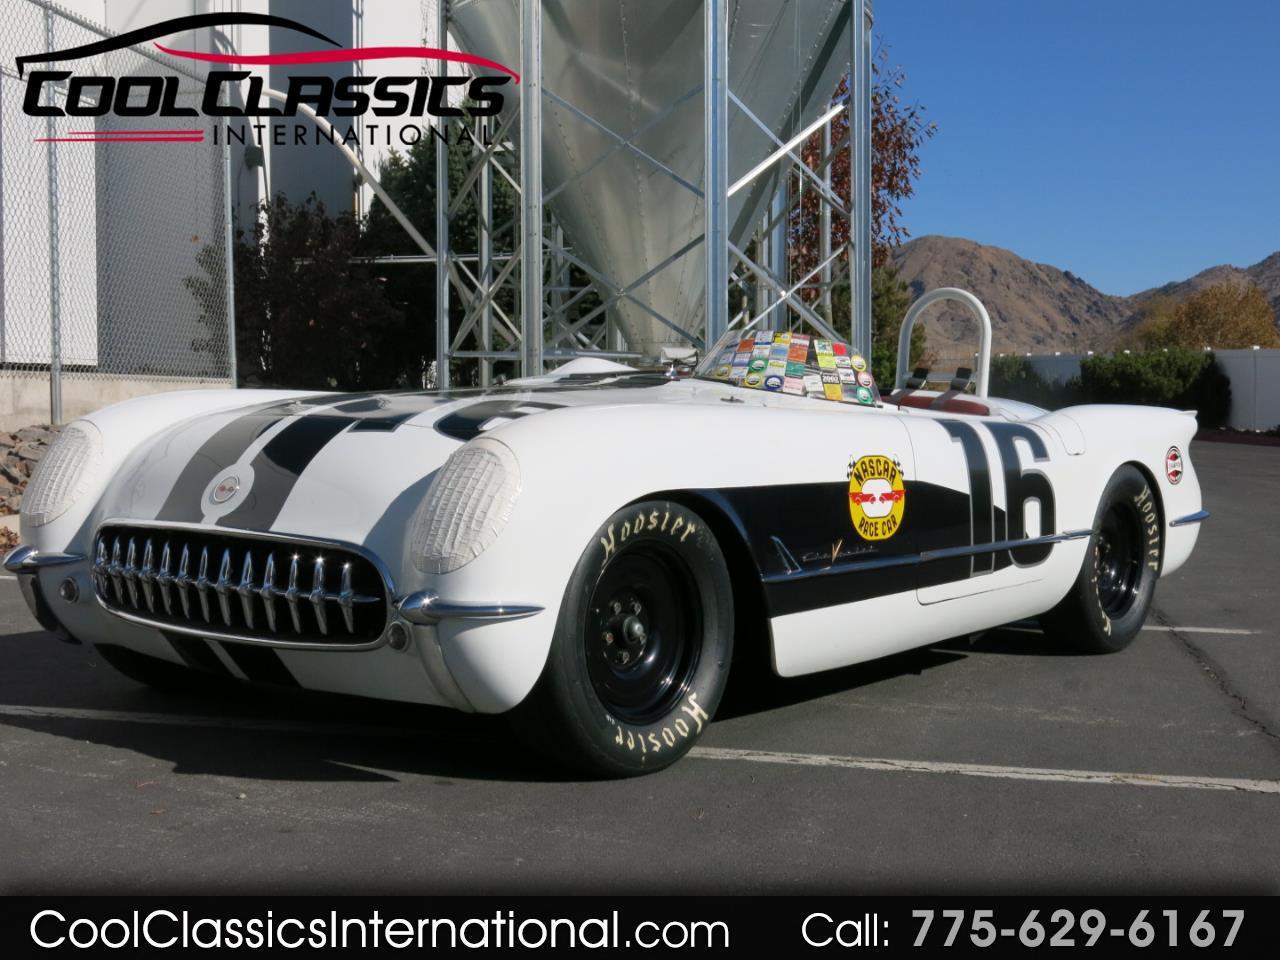 1955 Chevrolet Corvette Vintage Race Car